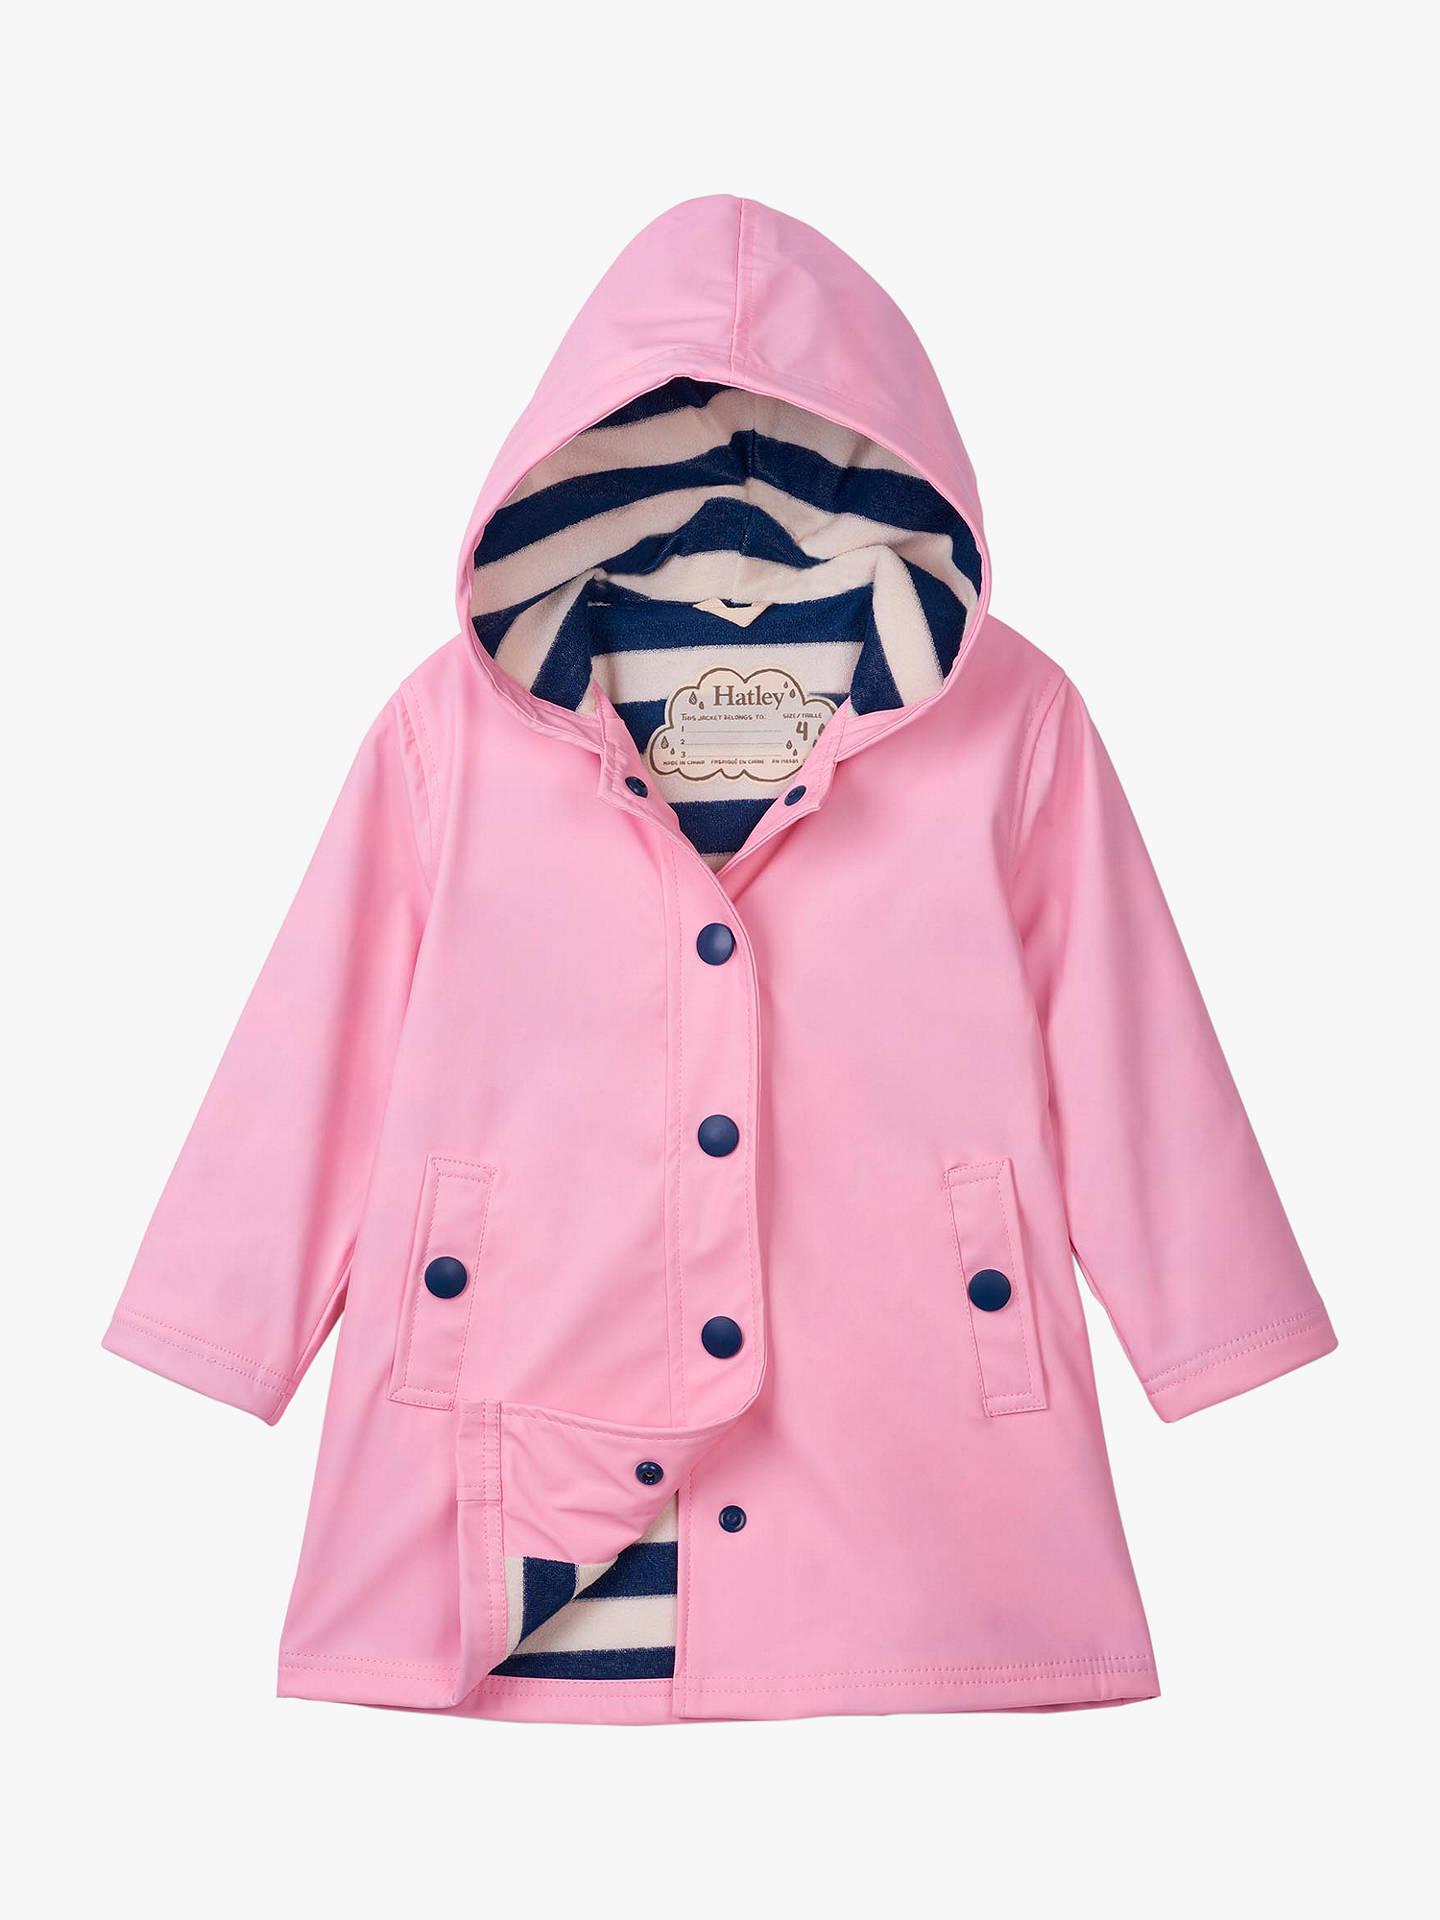 Hatley Girls' Splash Jacket, Pink at John Lewis & Partners